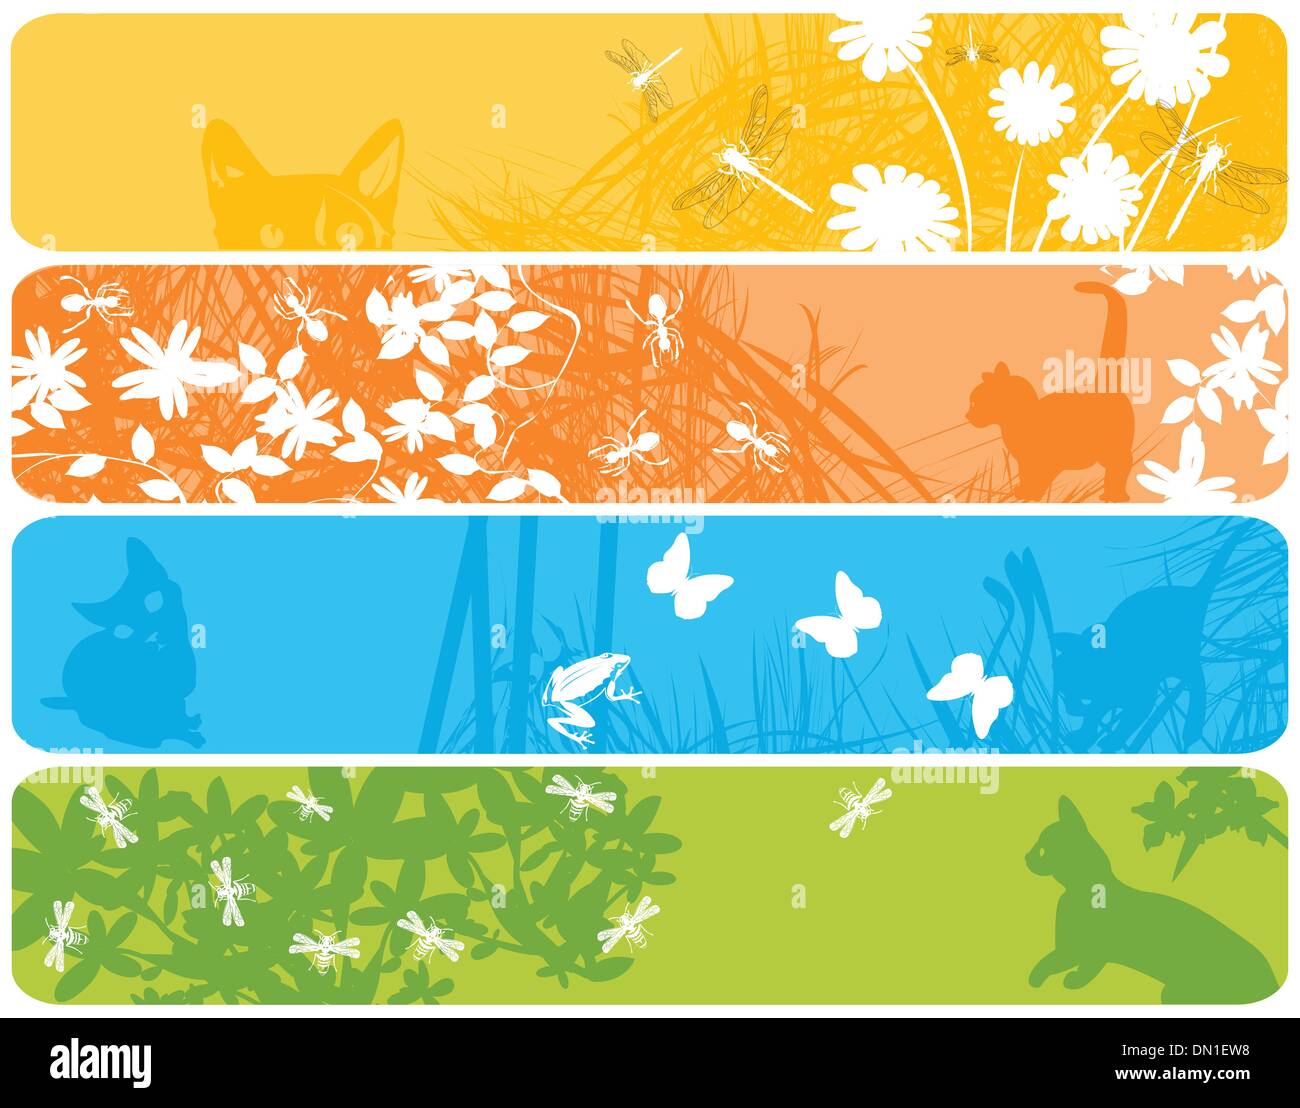 Bannières Web avec spring theme Illustration de Vecteur